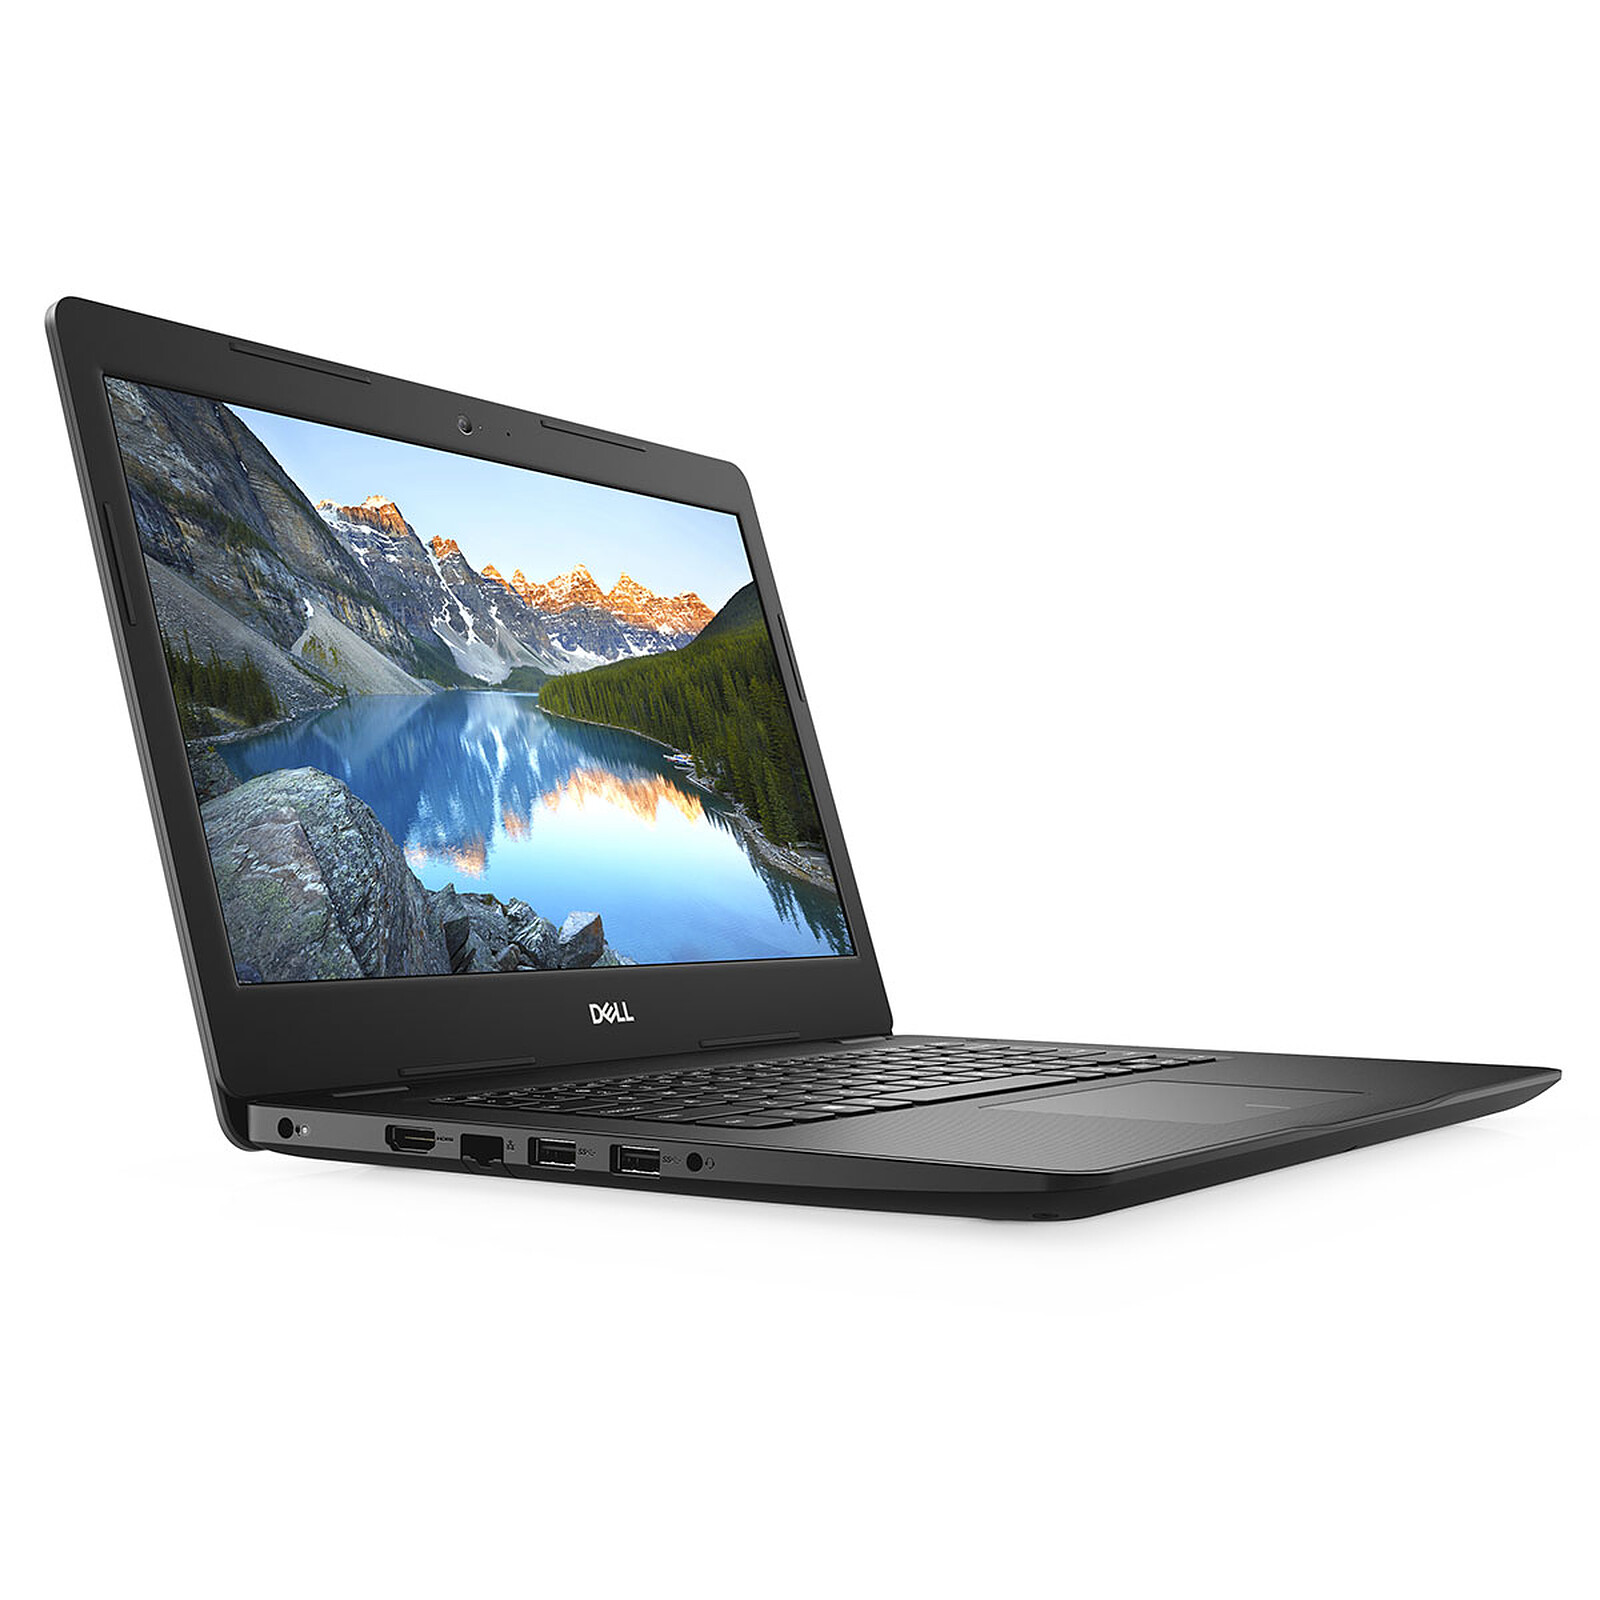 Acer Aspire 3 A315-58-31H7 - PC portable - Garantie 3 ans LDLC